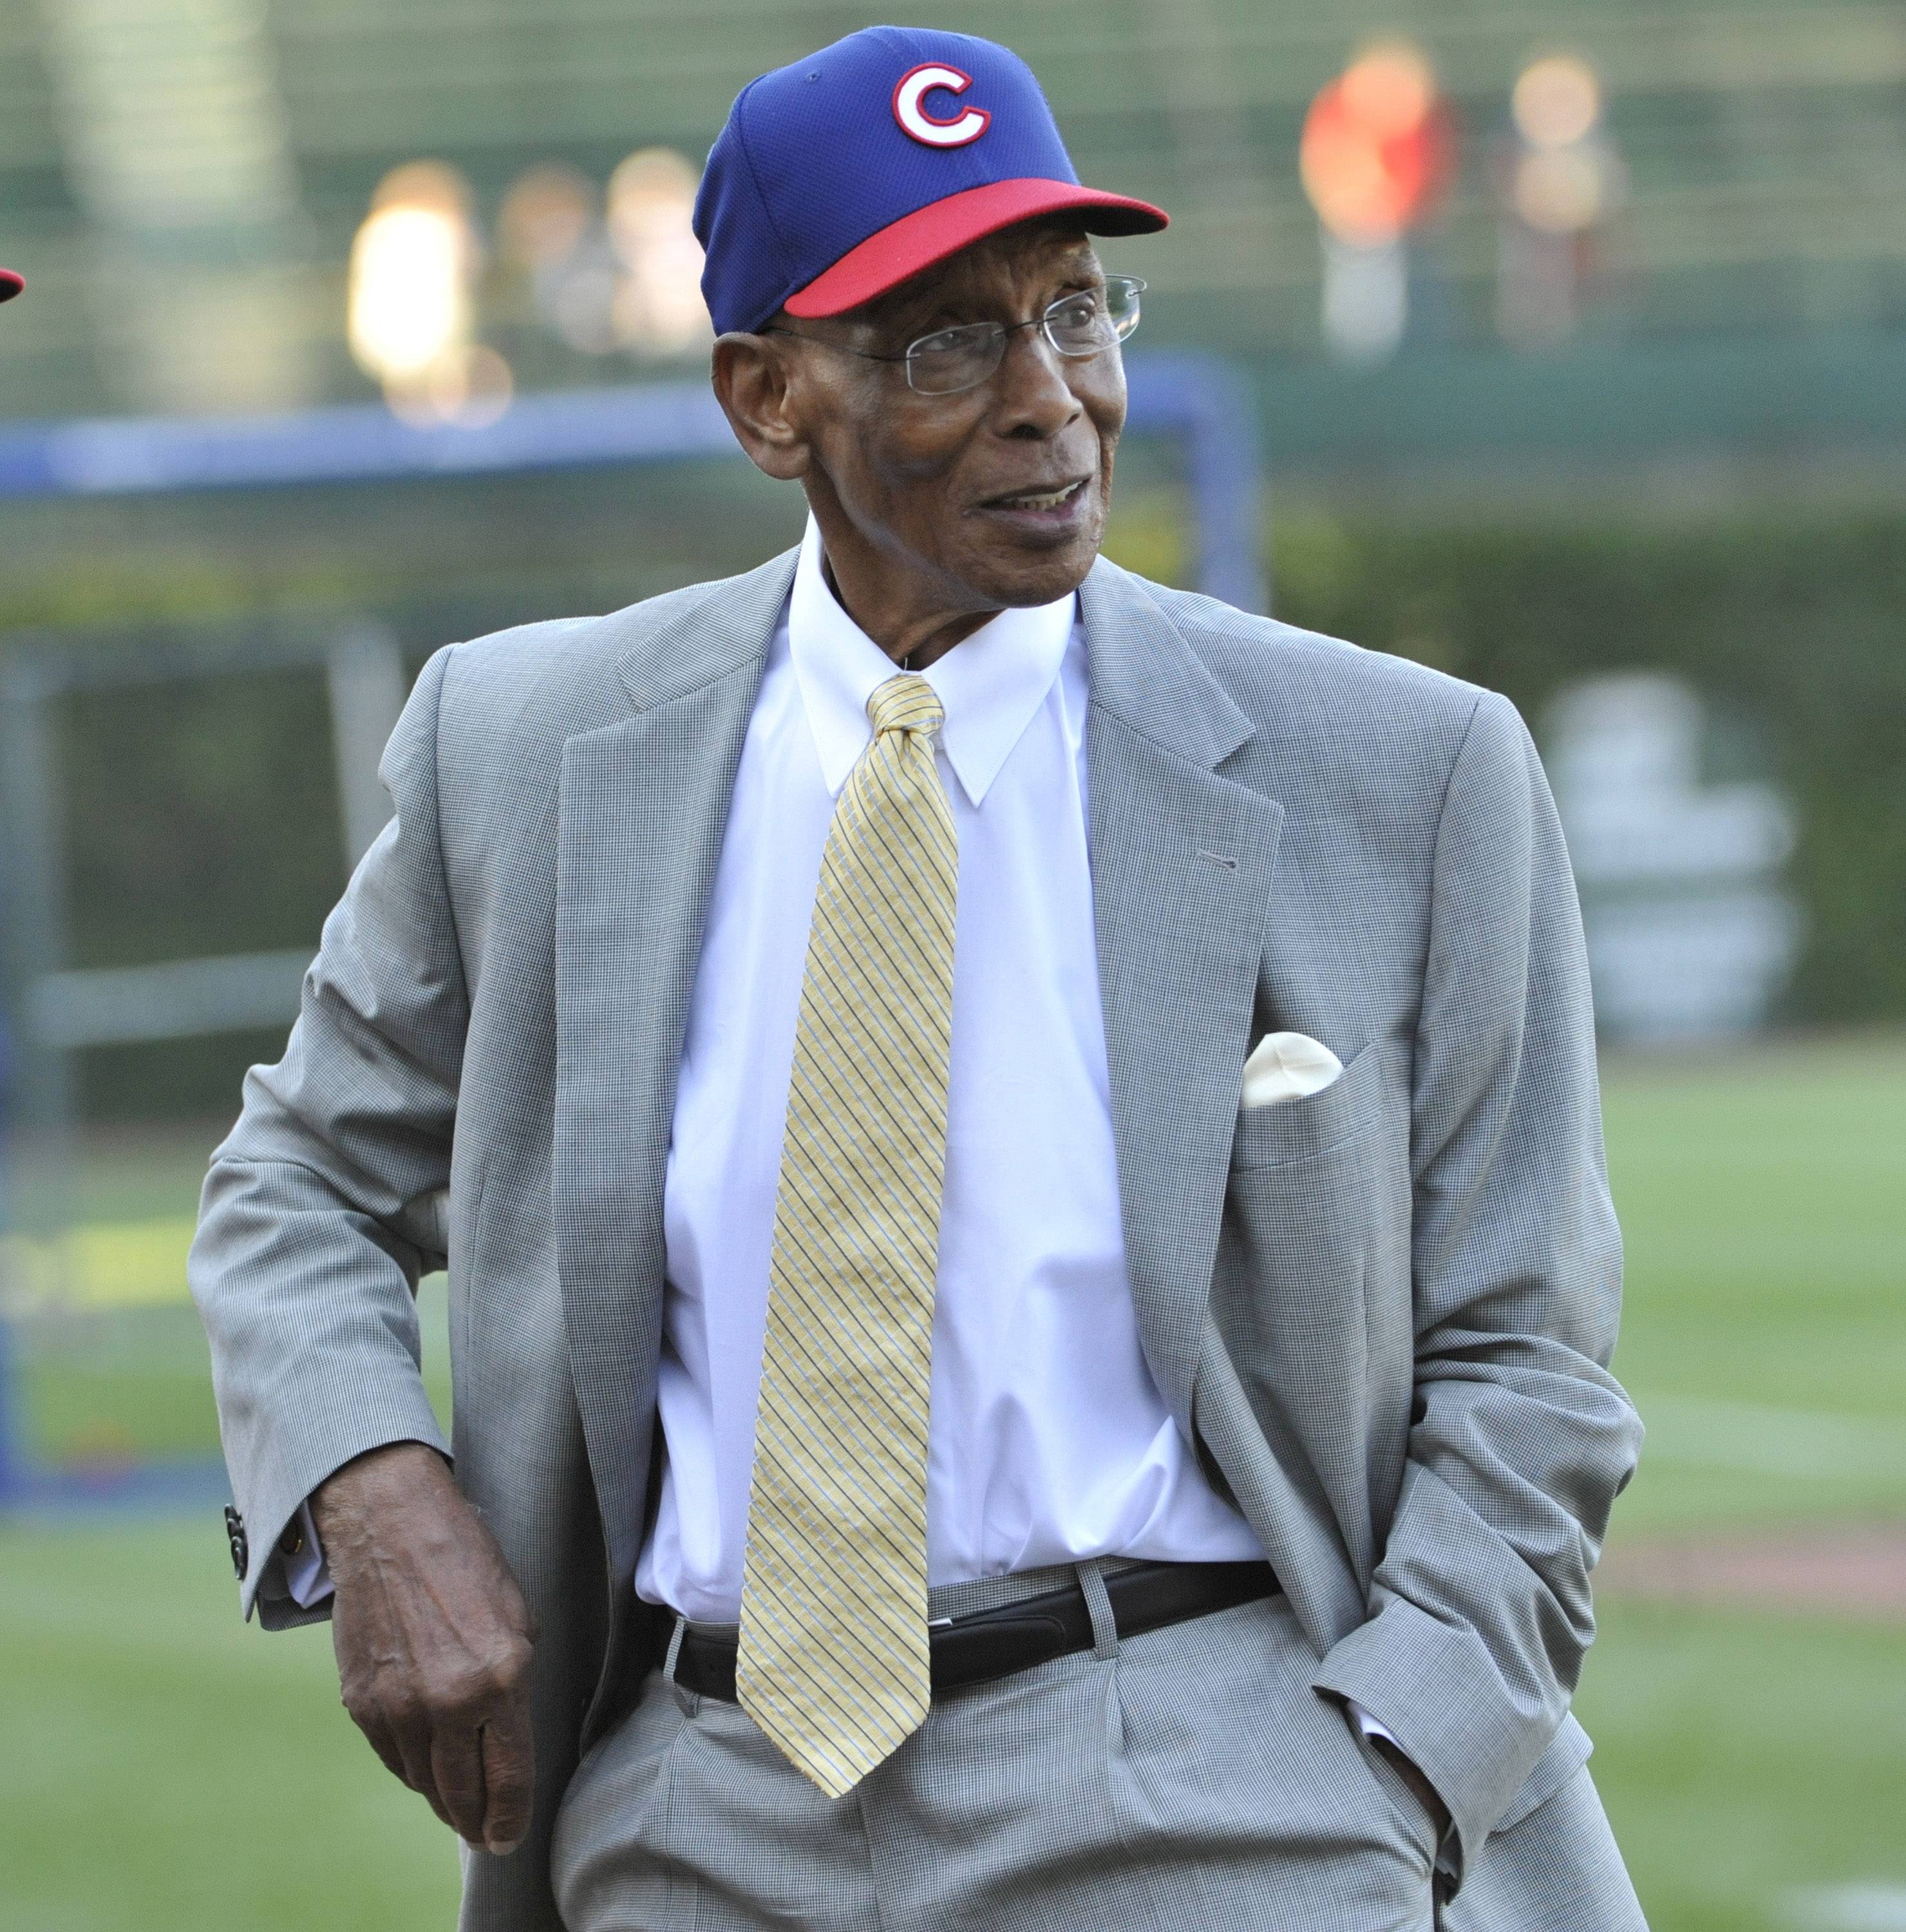 Beloved Mr. Cub, Hall of Famer Banks dies at 83